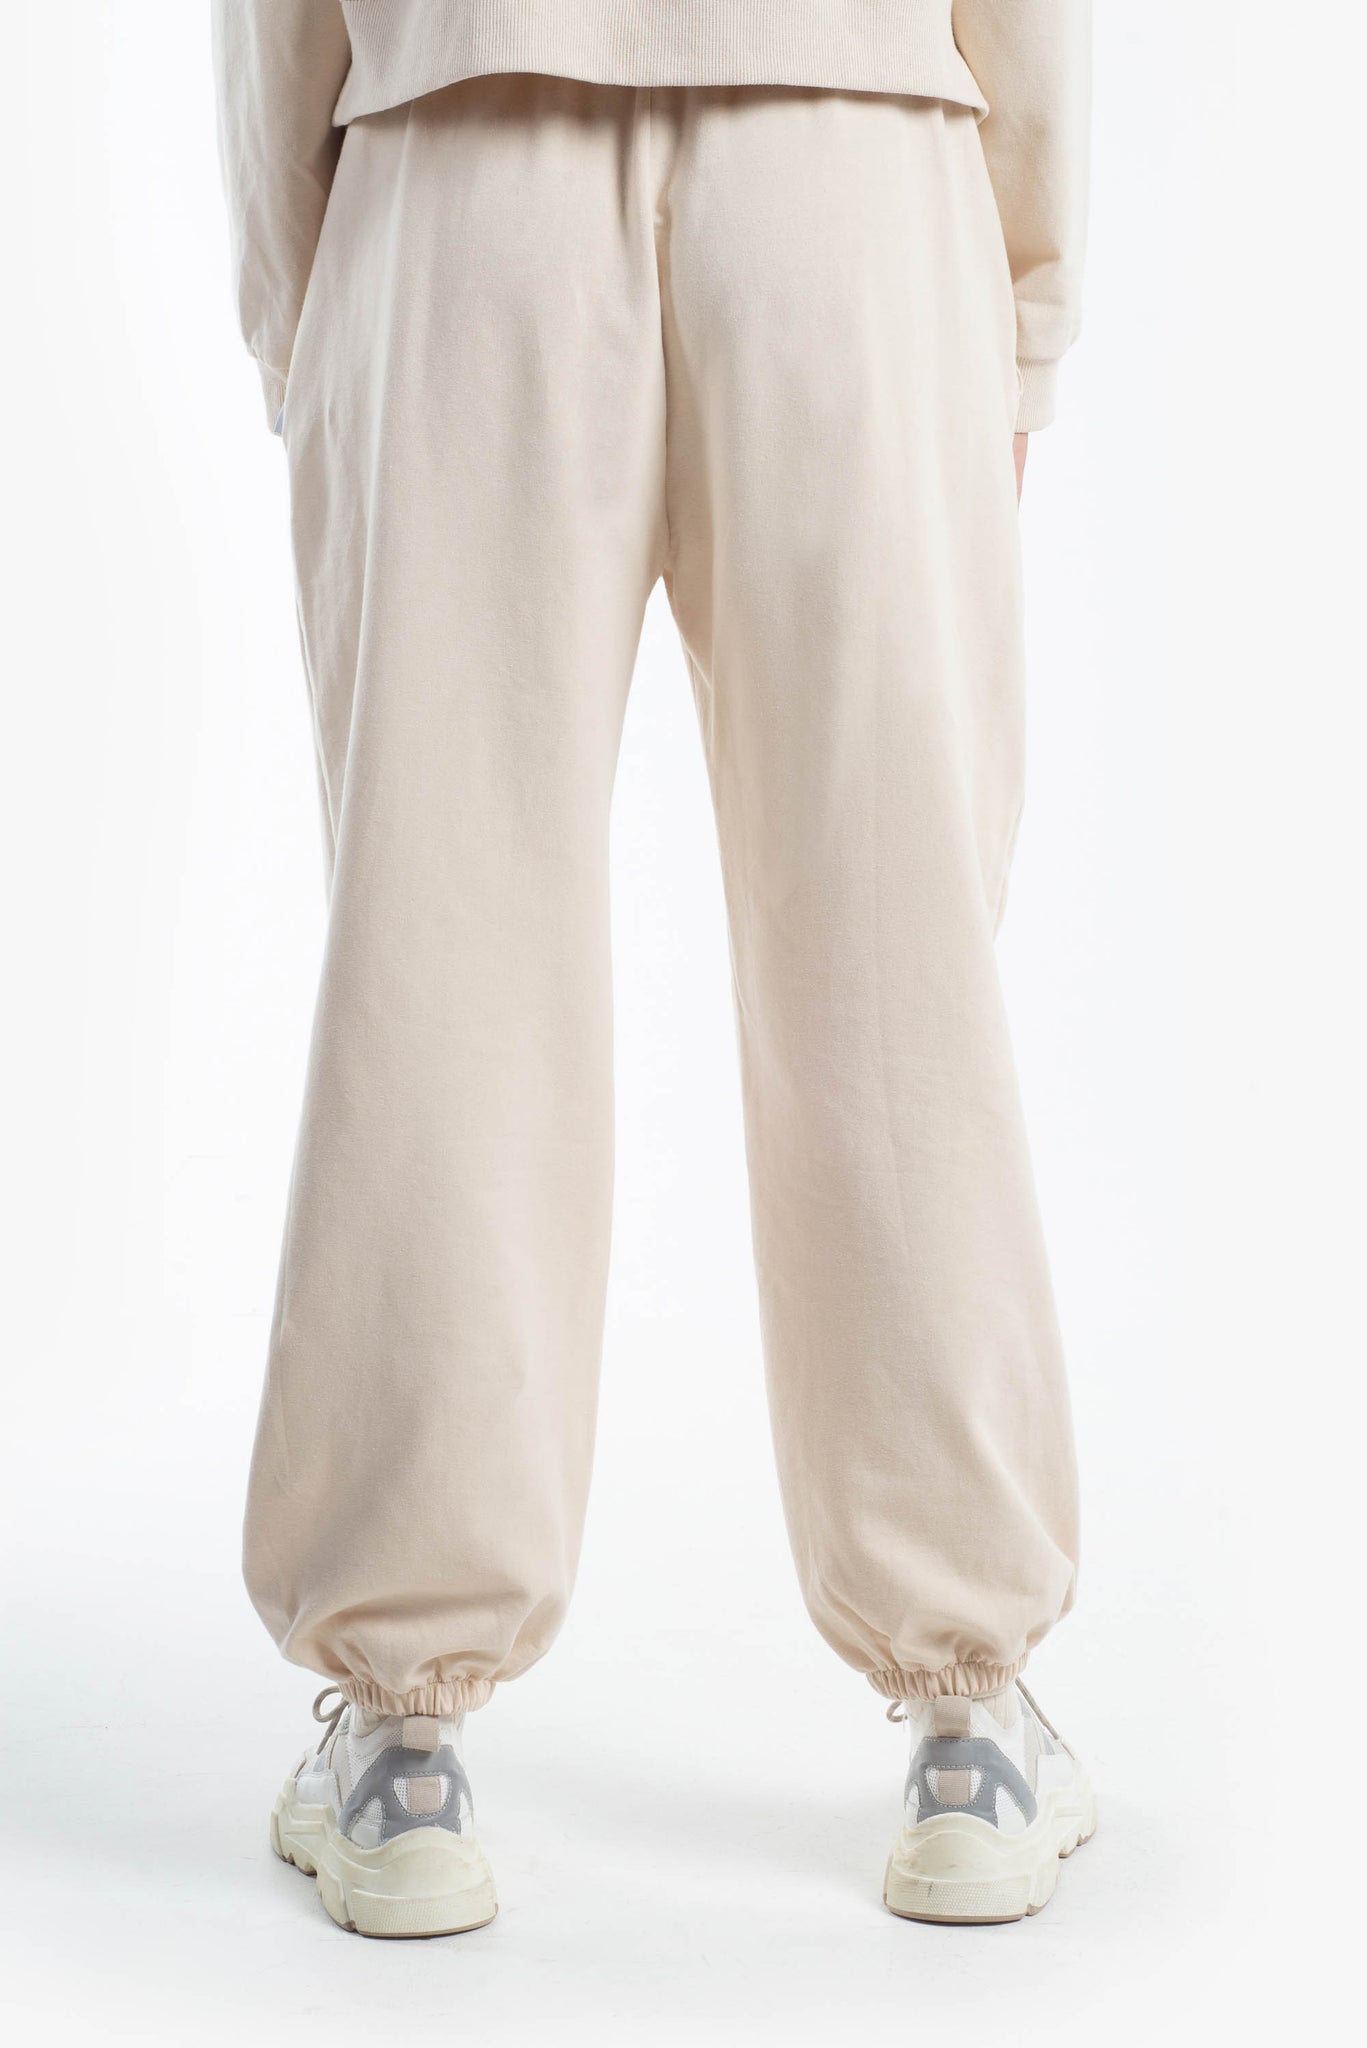 Pantalone comfy fit elastico